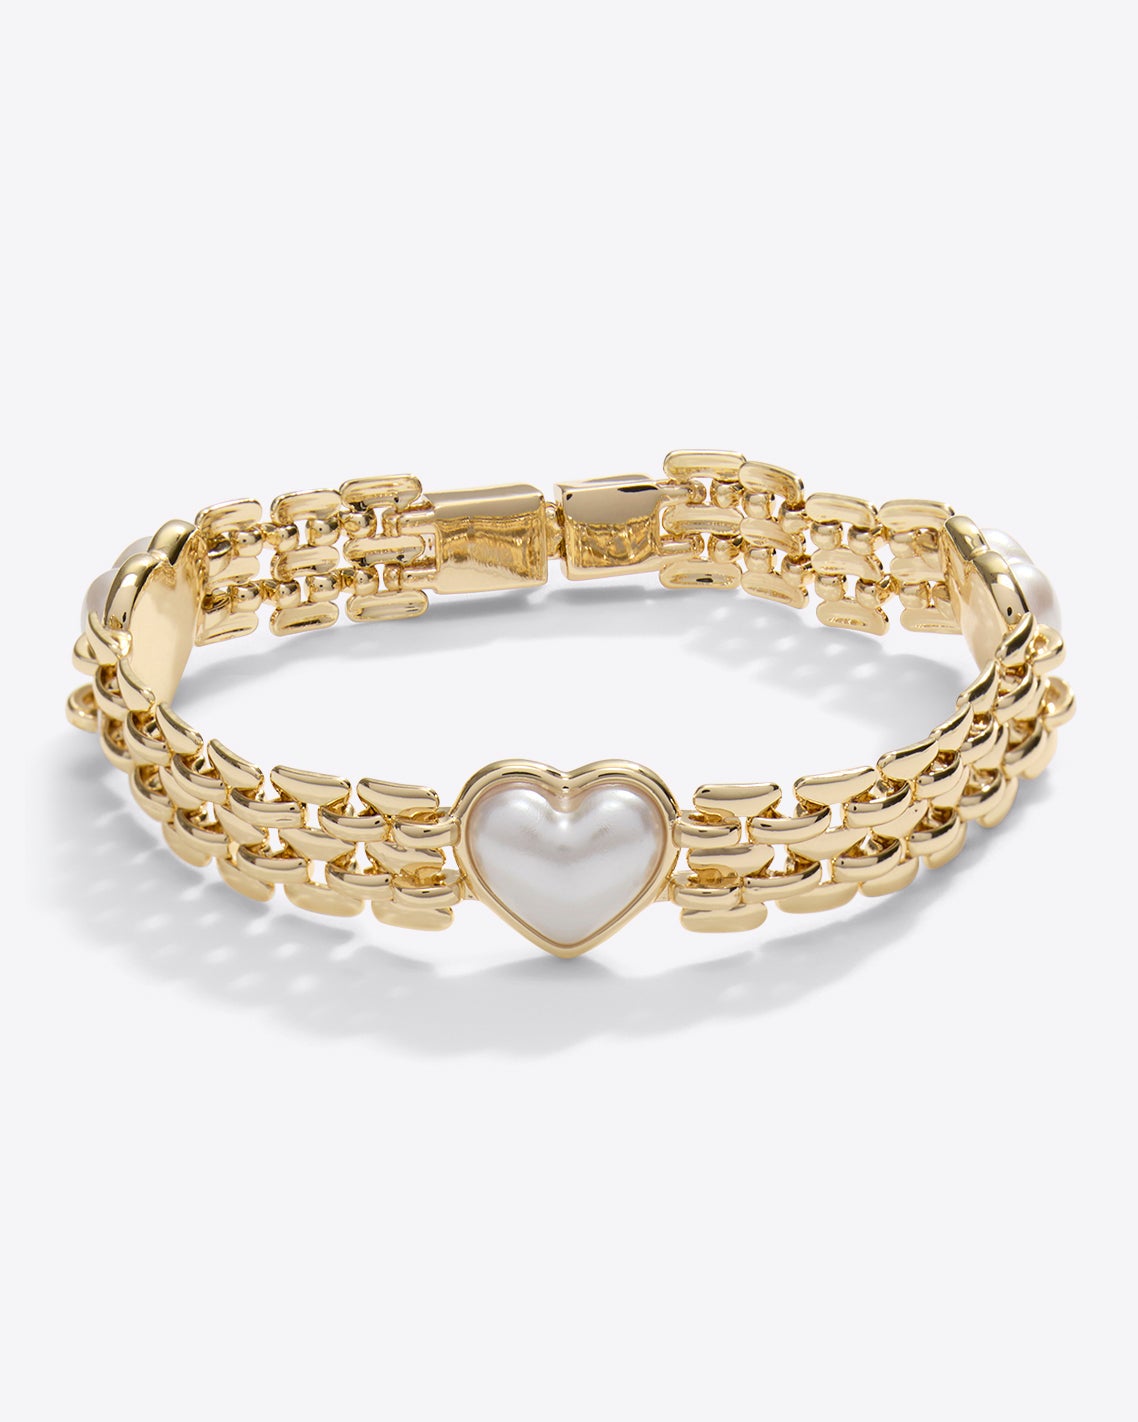 Open Wide Bracelet Bangle Chunky Bracelets Women Gold Jewelry Miss Womens |  eBay